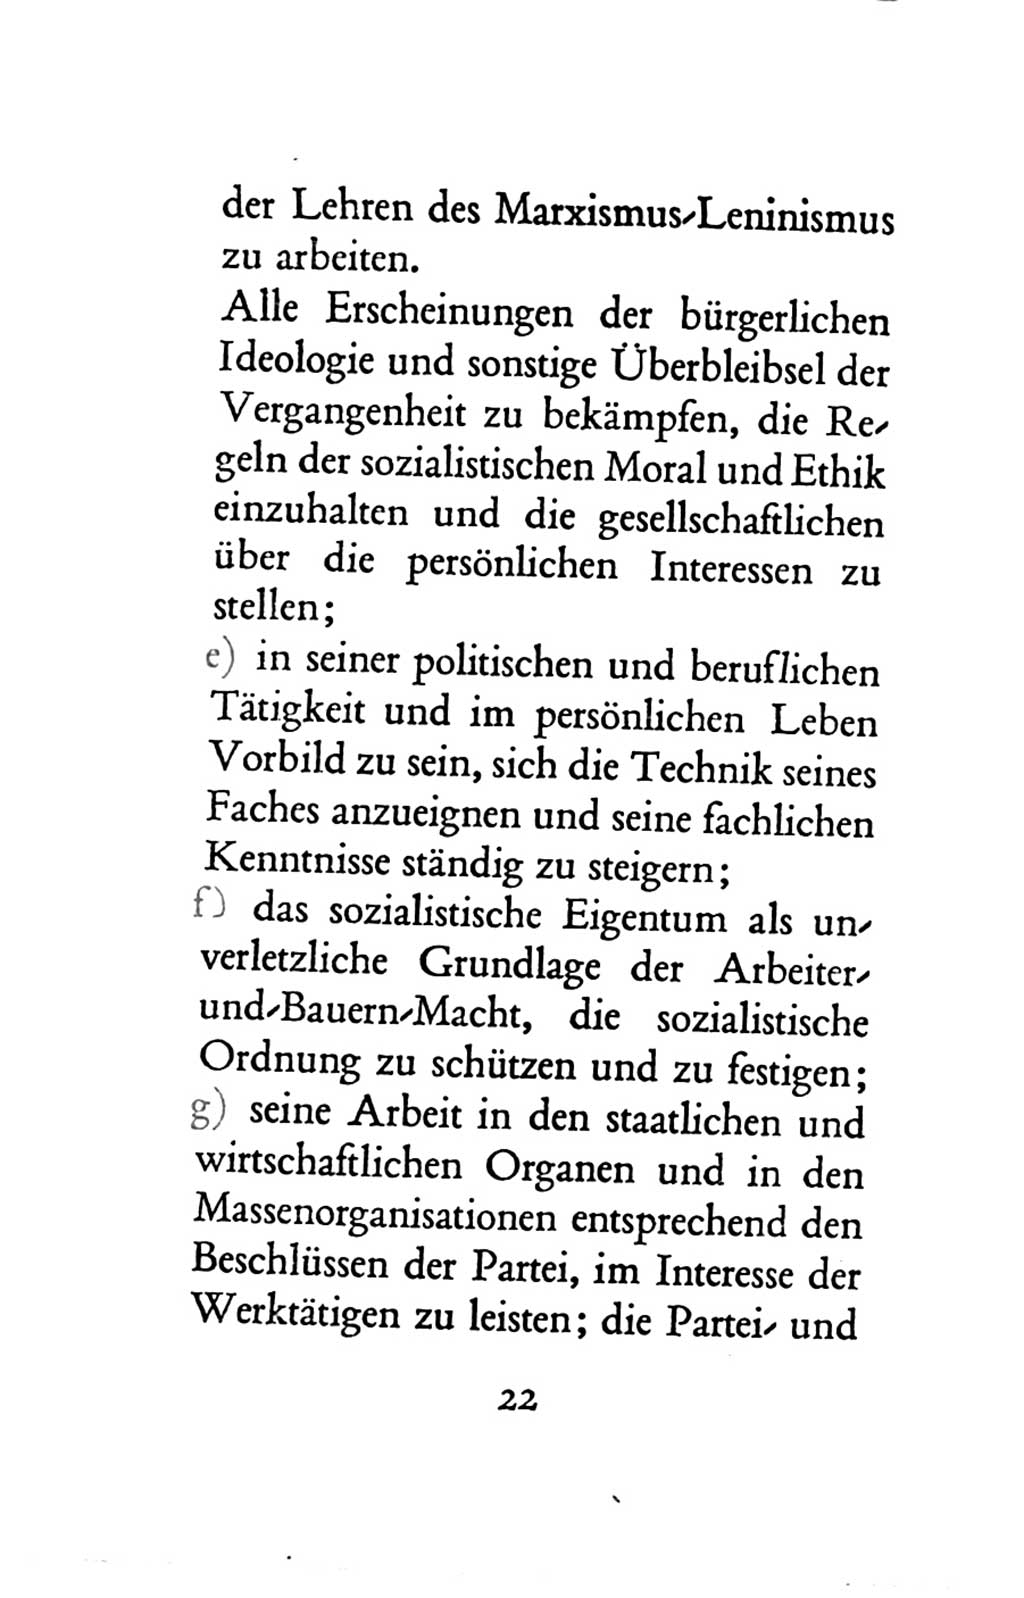 Statut der Sozialistischen Einheitspartei Deutschlands (SED) 1963, Seite 22 (St. SED DDR 1963, S. 22)